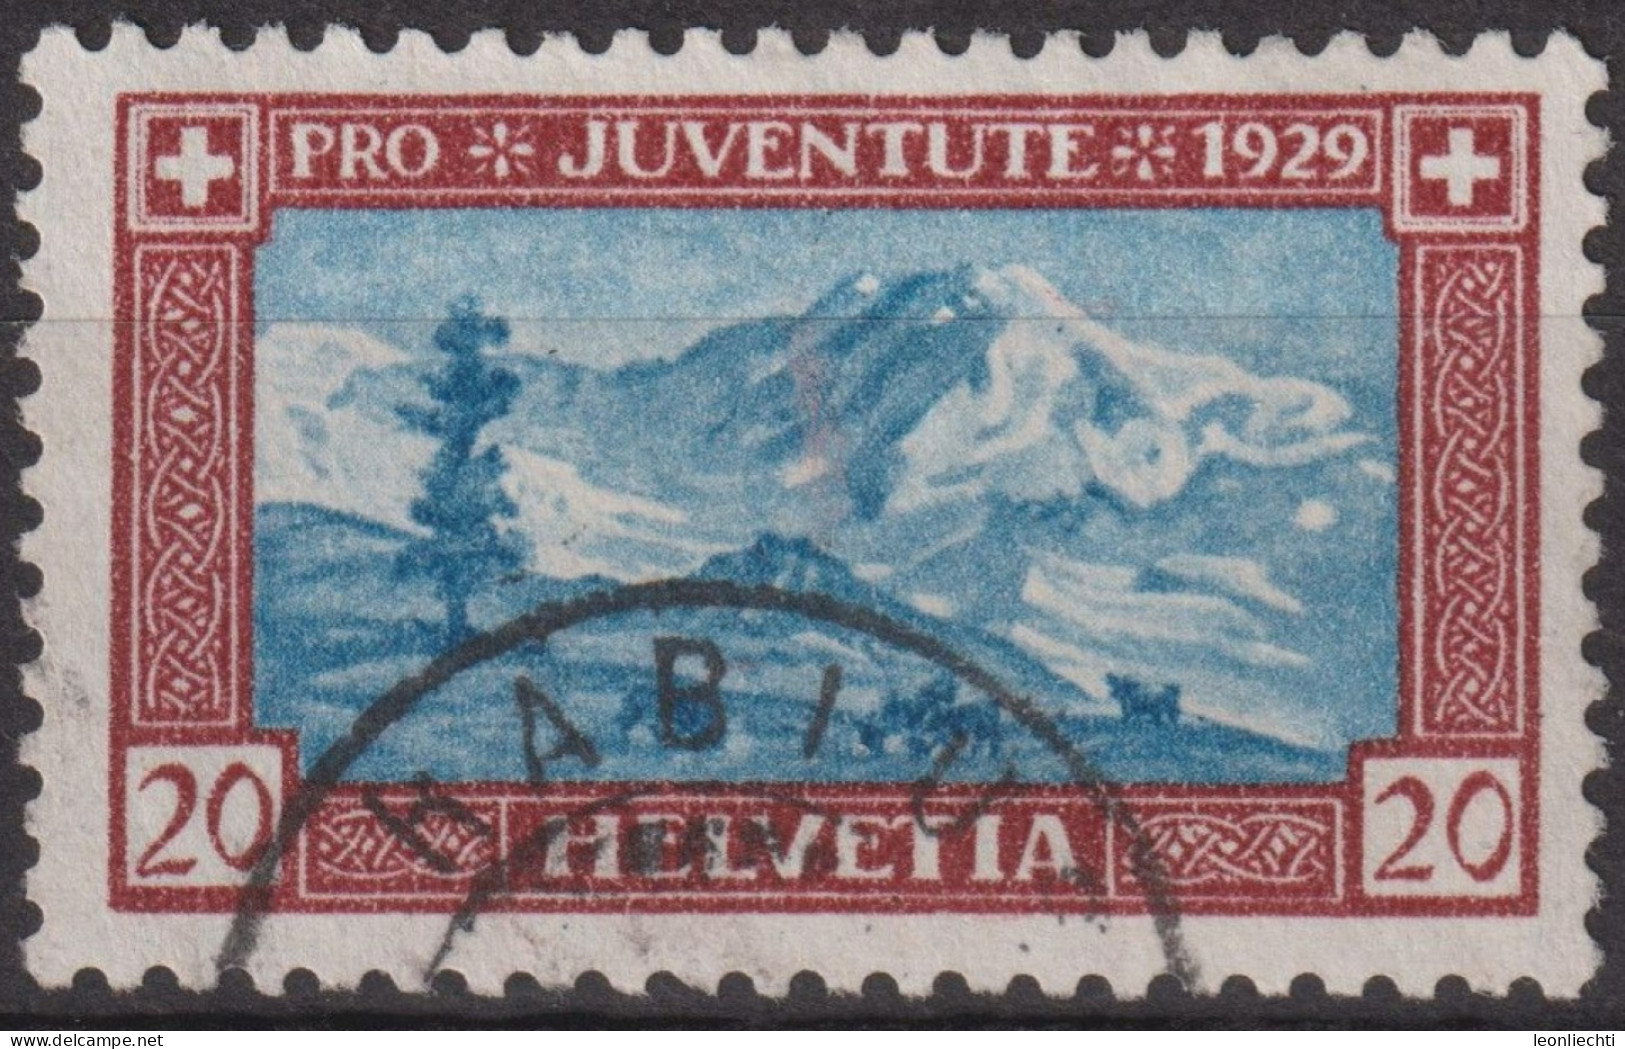 1929 Schweiz / Pro Juventute ° Zum:CH J51, Mi:CH 237, Yt:CH 237, Lyskamm - Used Stamps